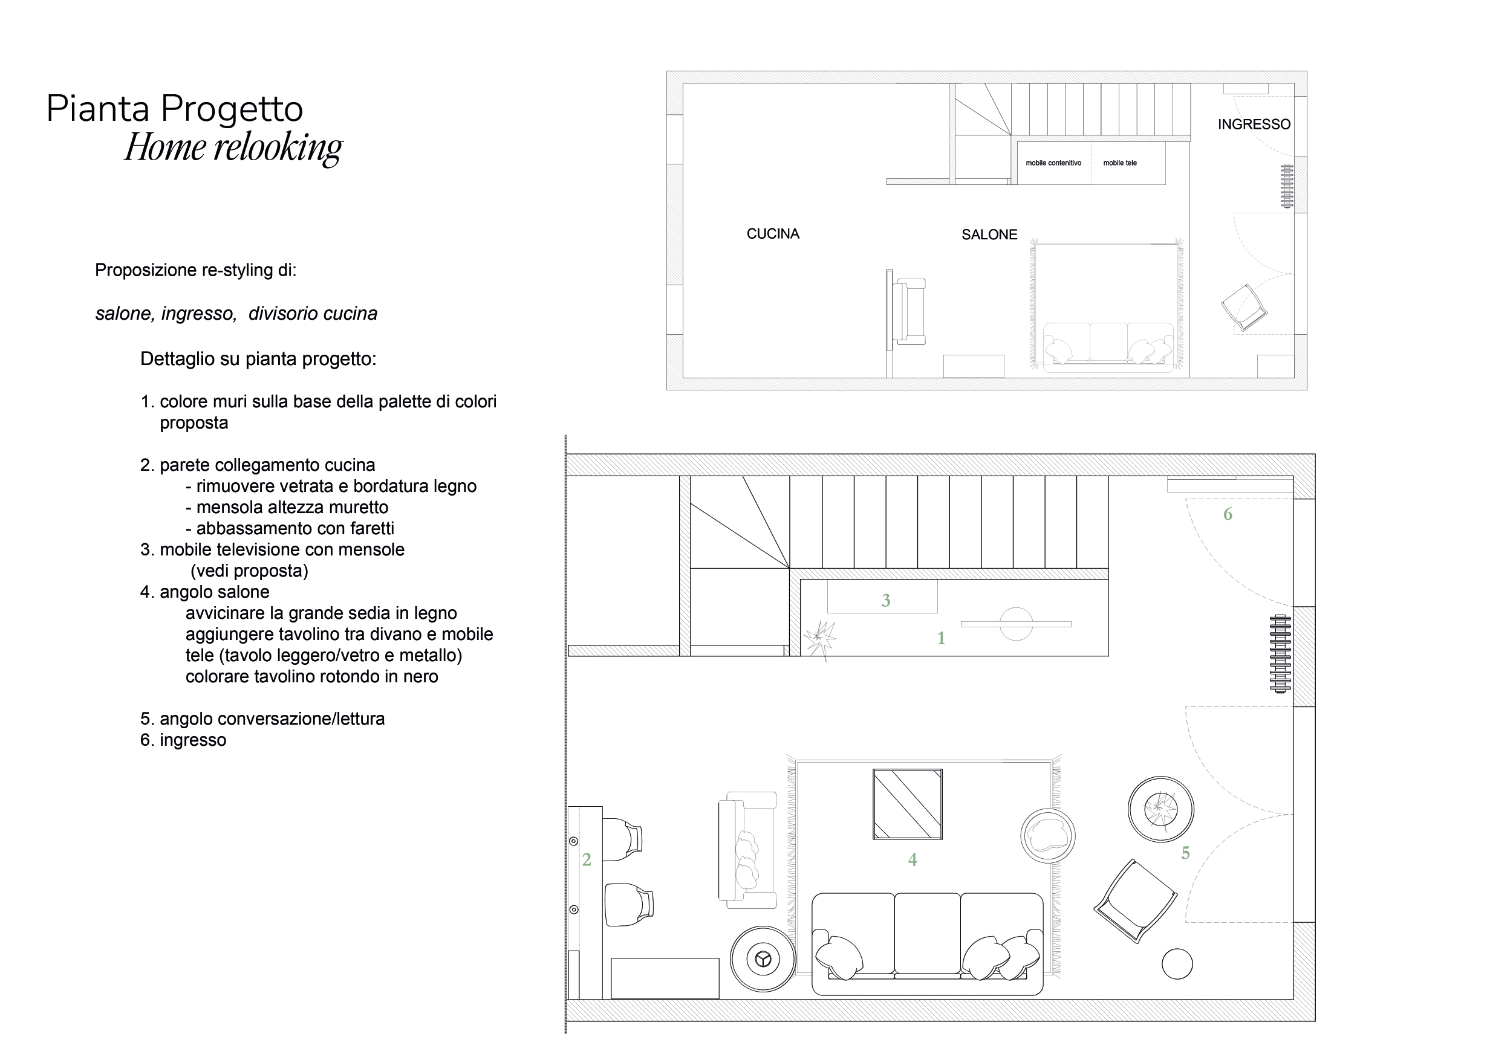 Plan de réaménagement pour le service de relooking d'une petite villa à Legnano, par le studio Elles Interior Design.